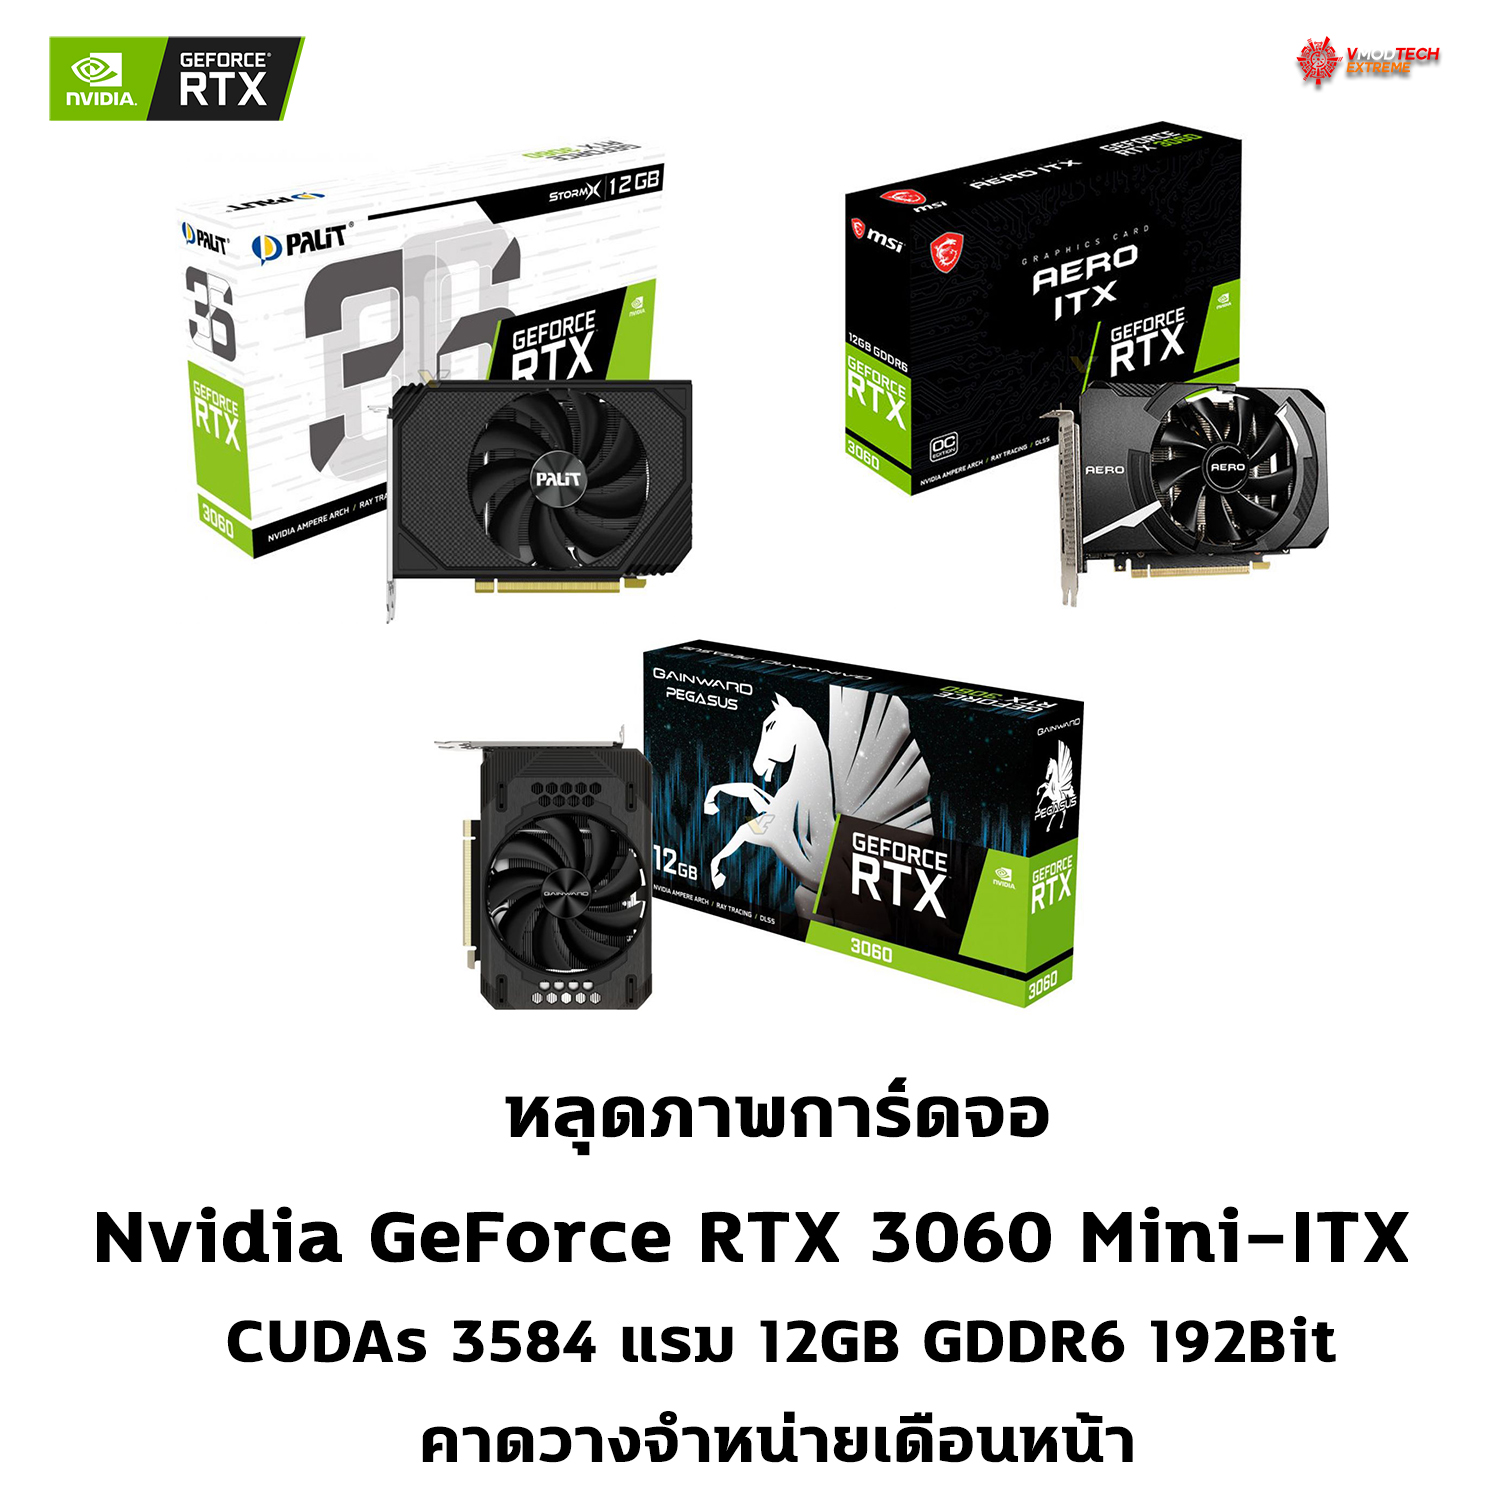 หลุดภาพการ์ดจอ Nvidia GeForce RTX 3060 ไซส์เล็ก Mini-ITX คาดวางจำหน่ายเดือนหน้า